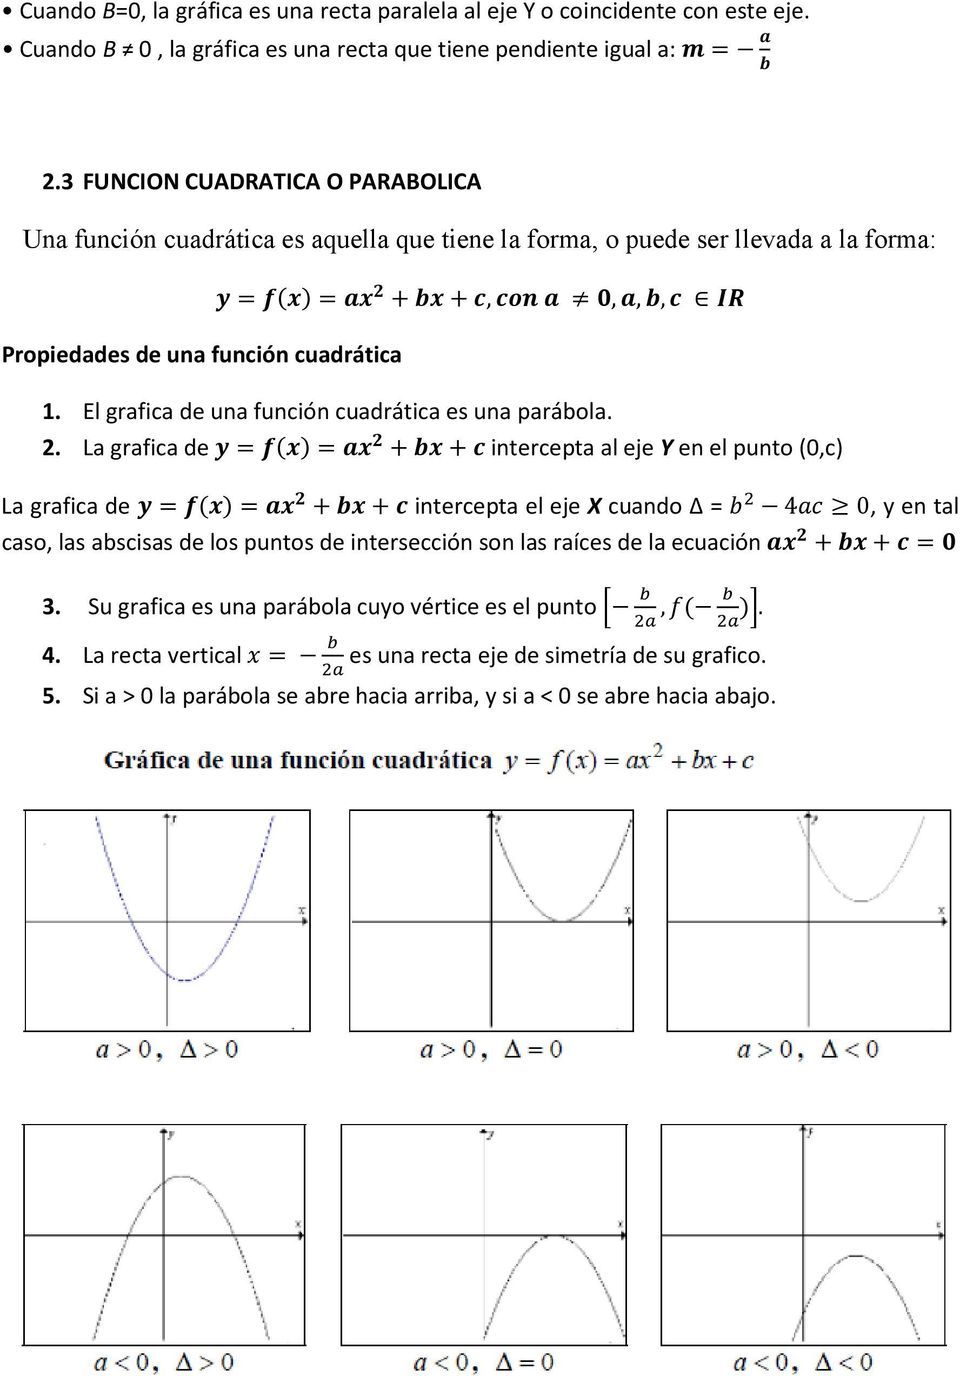 El grafica de una función cuadrática es una parábola. 2.